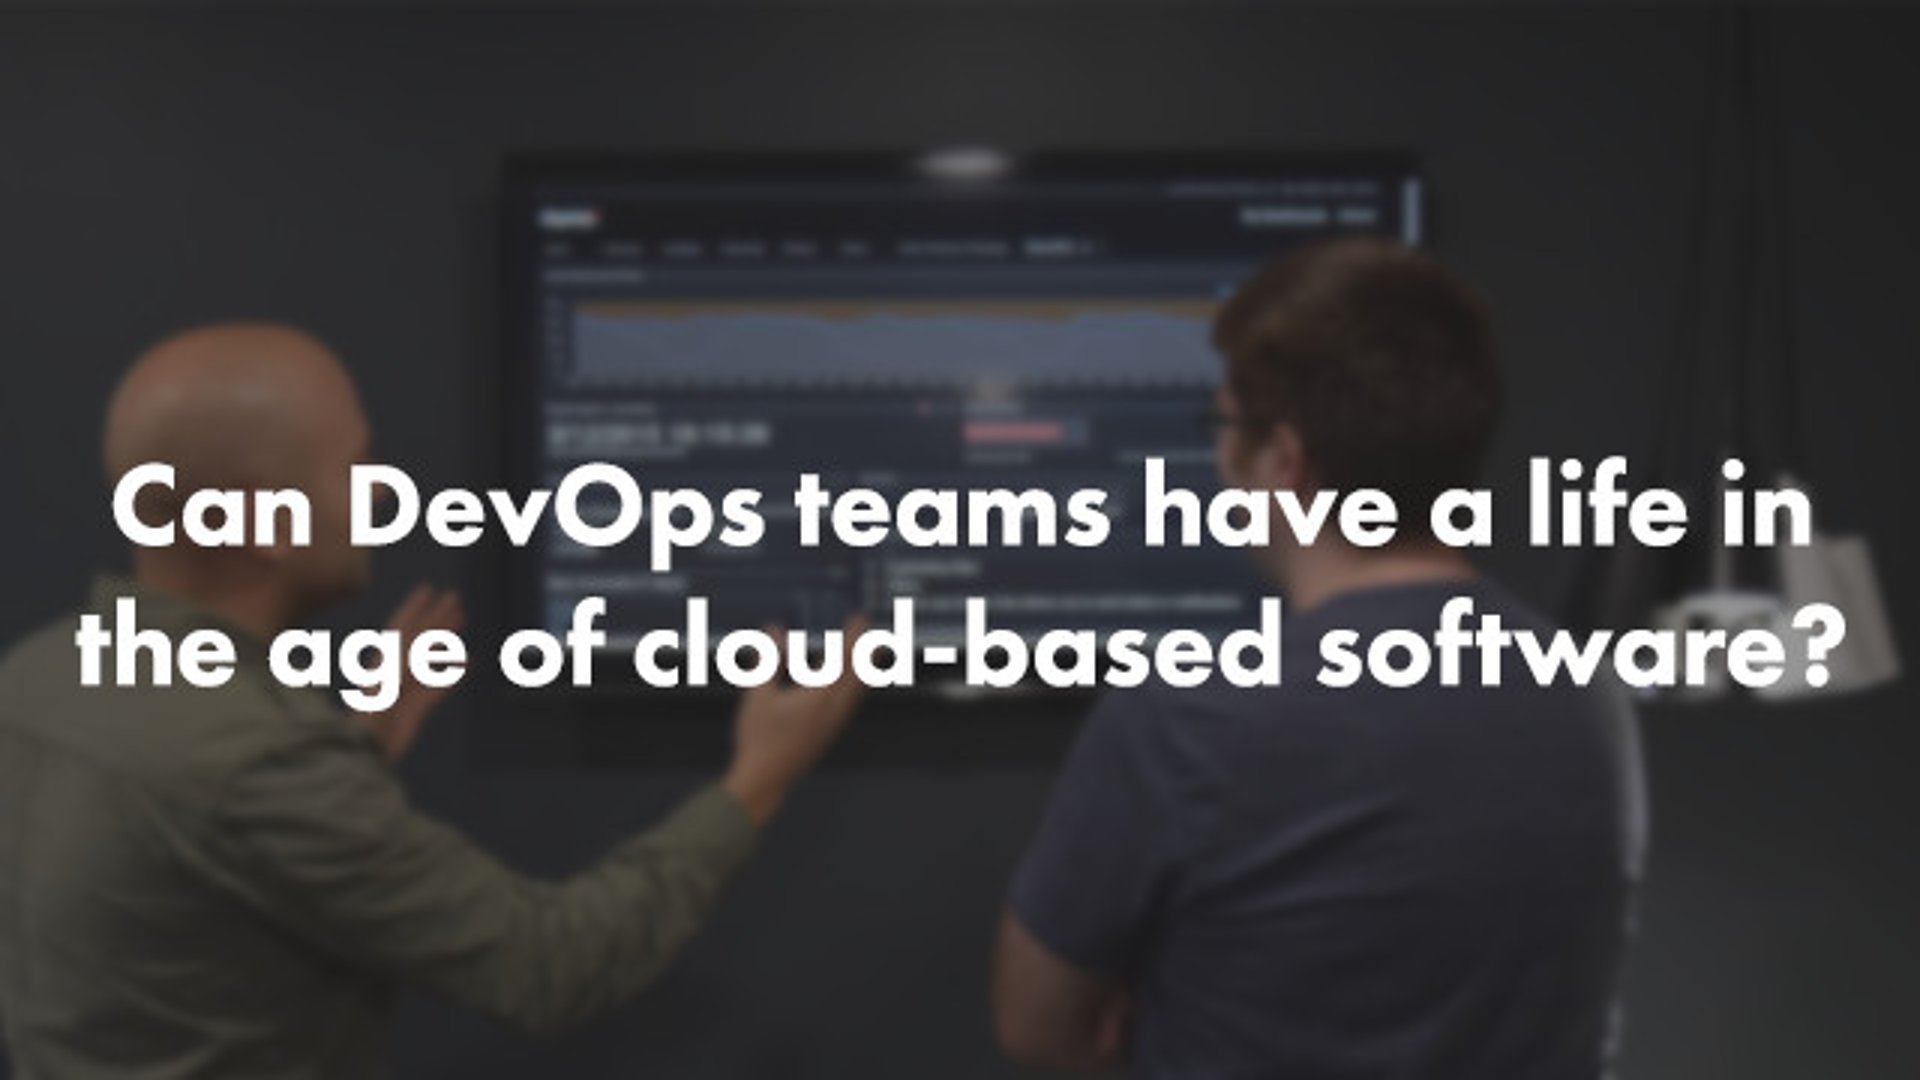 Devops Teams in Cloudbased Age